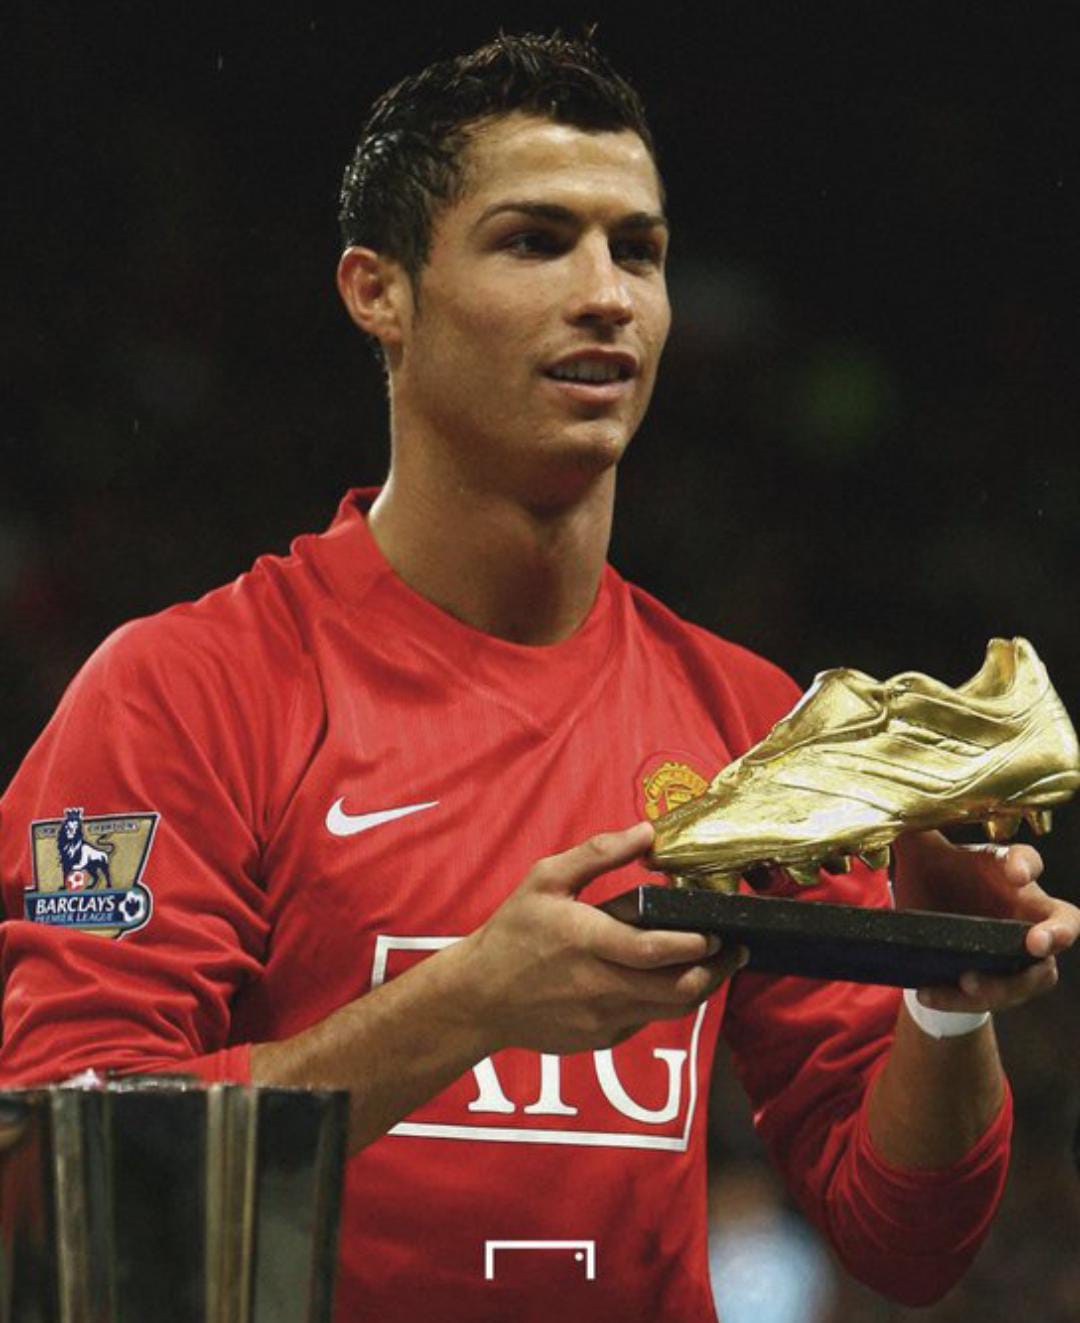 5 Rekomendasi Sepatu Futsal Terbaik yang Dipakai Cristiano Ronaldo, Cek Harga dan Mereknya di Sini!